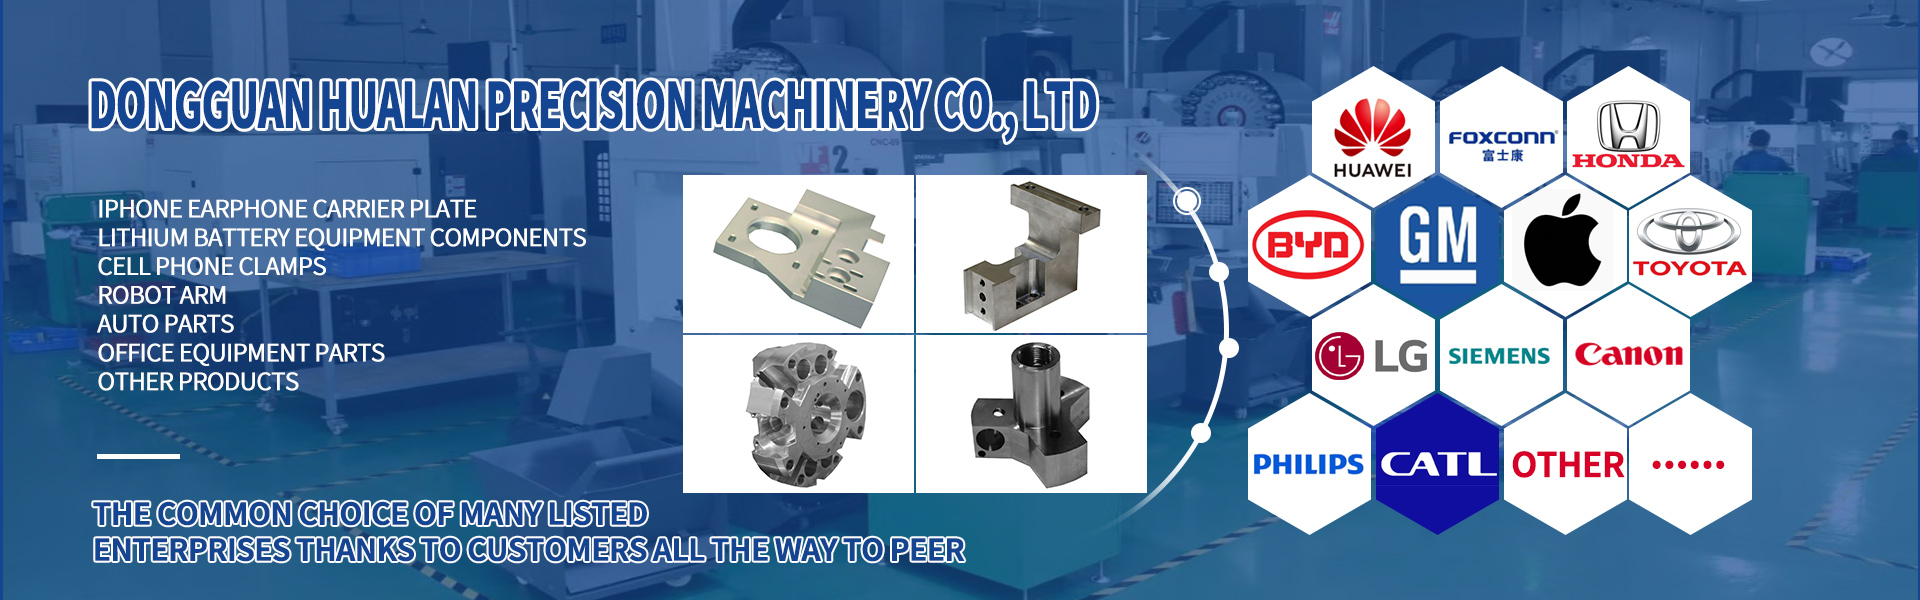 CNC obráběcí části, kratice a frézování, řezání linek,Dongguan Hualan Precision Machinery Co., LTD